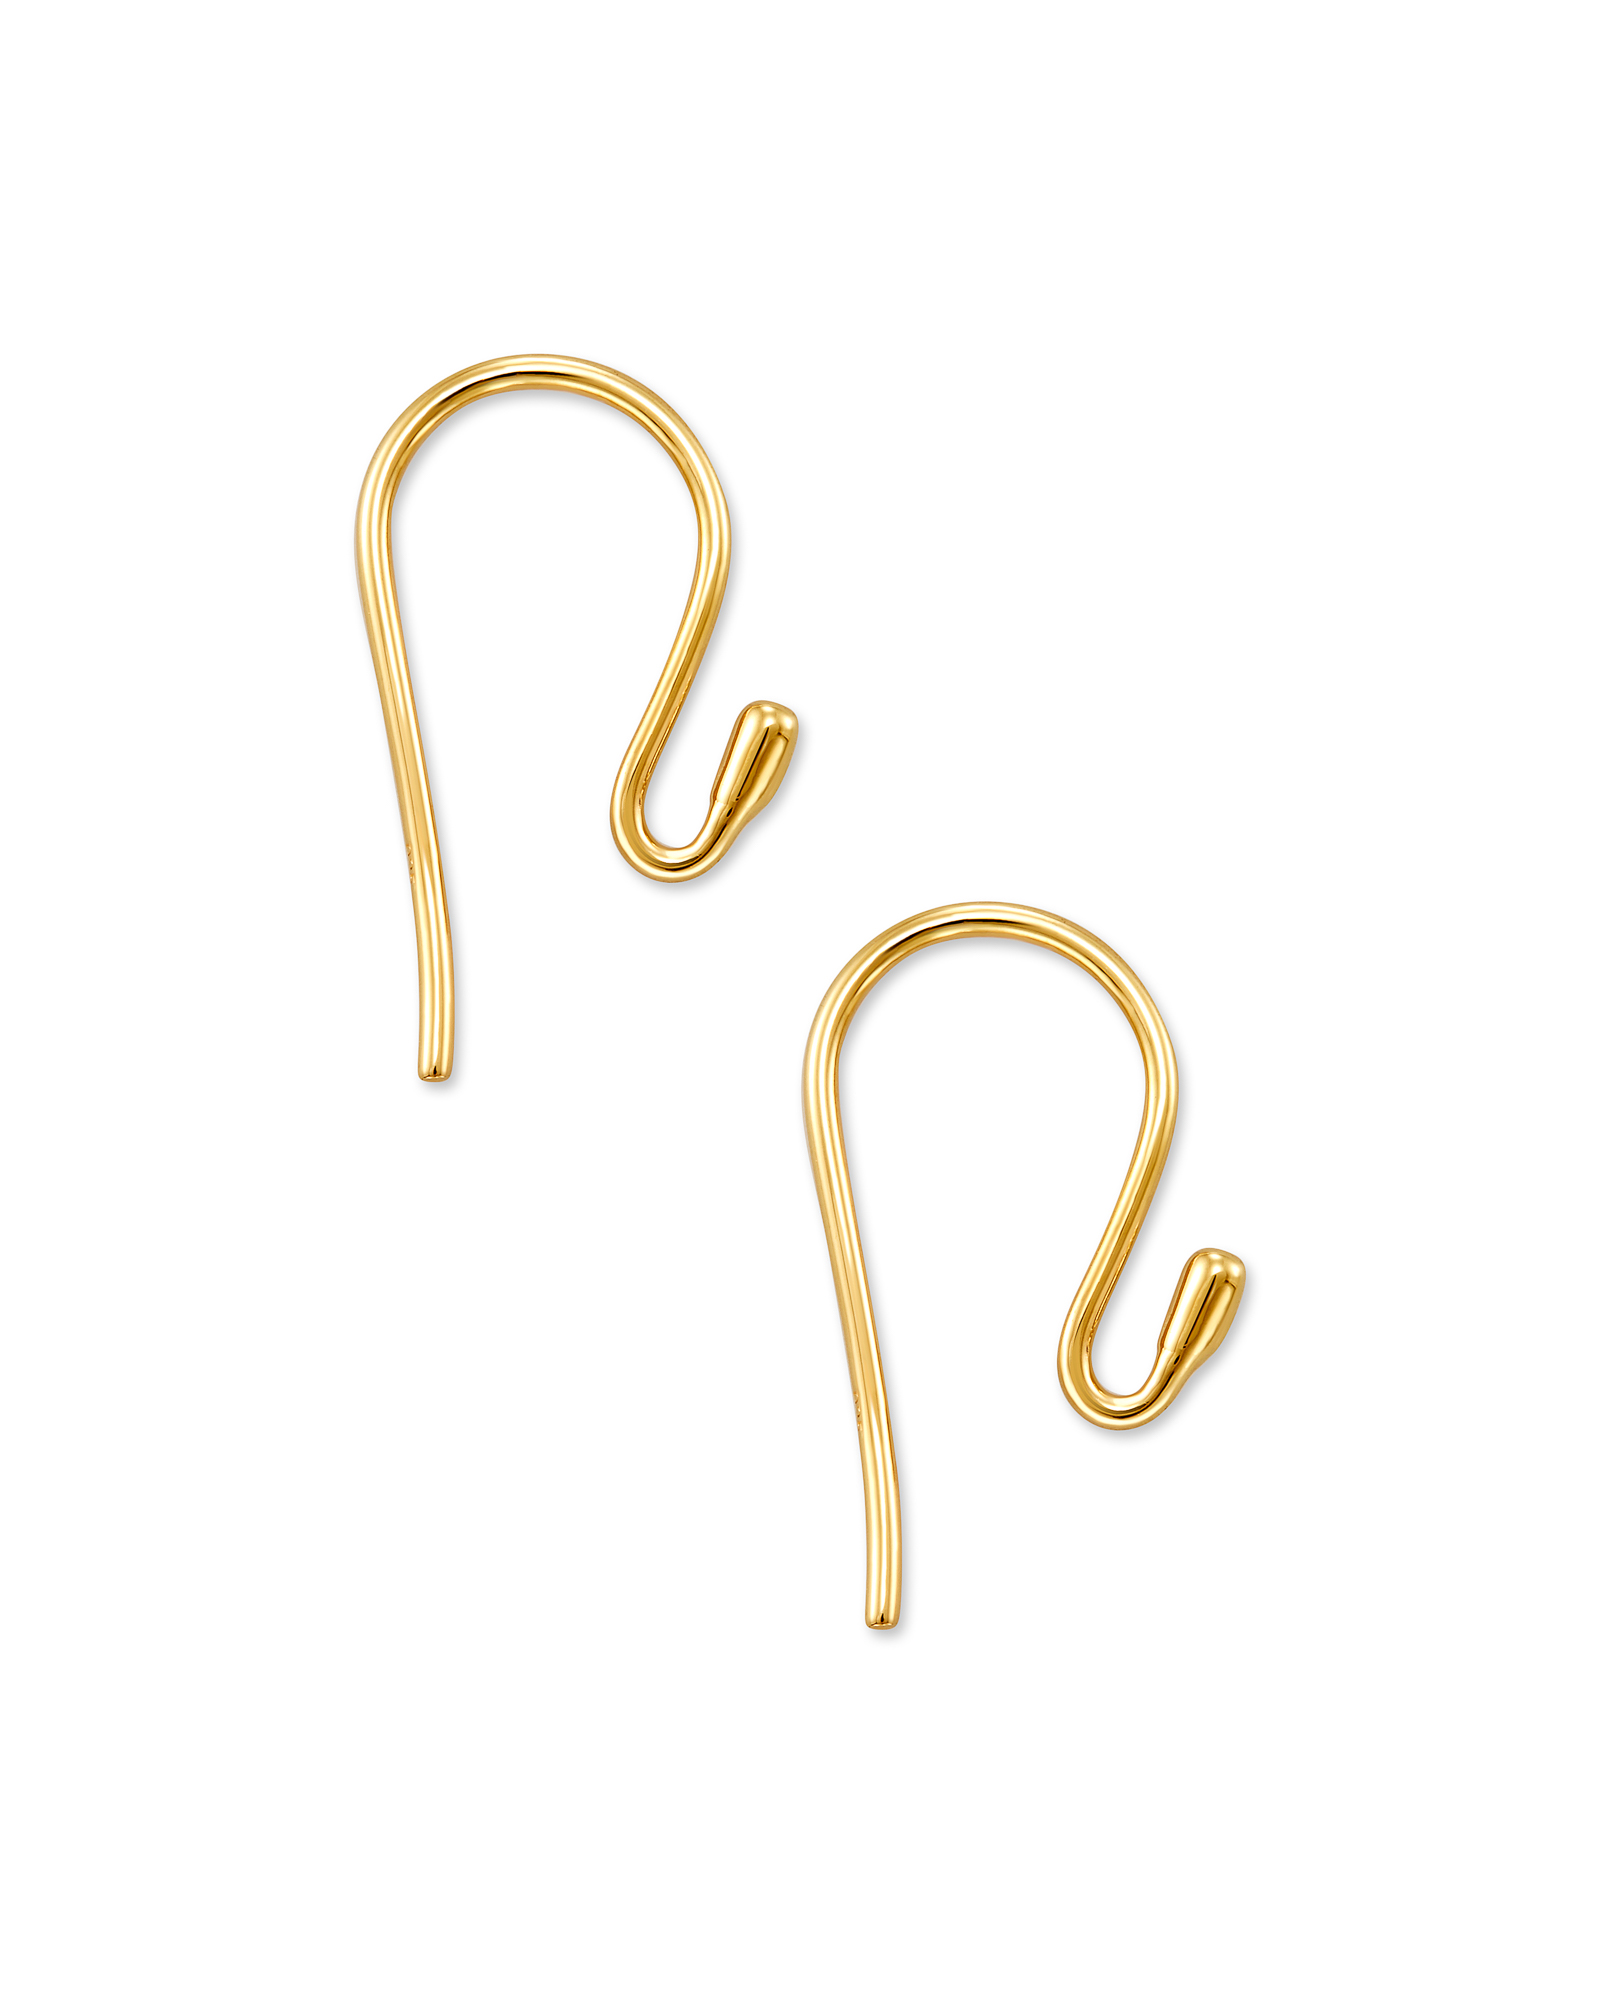 Earring Hook in 18k Gold Vermeil | Kendra Scott